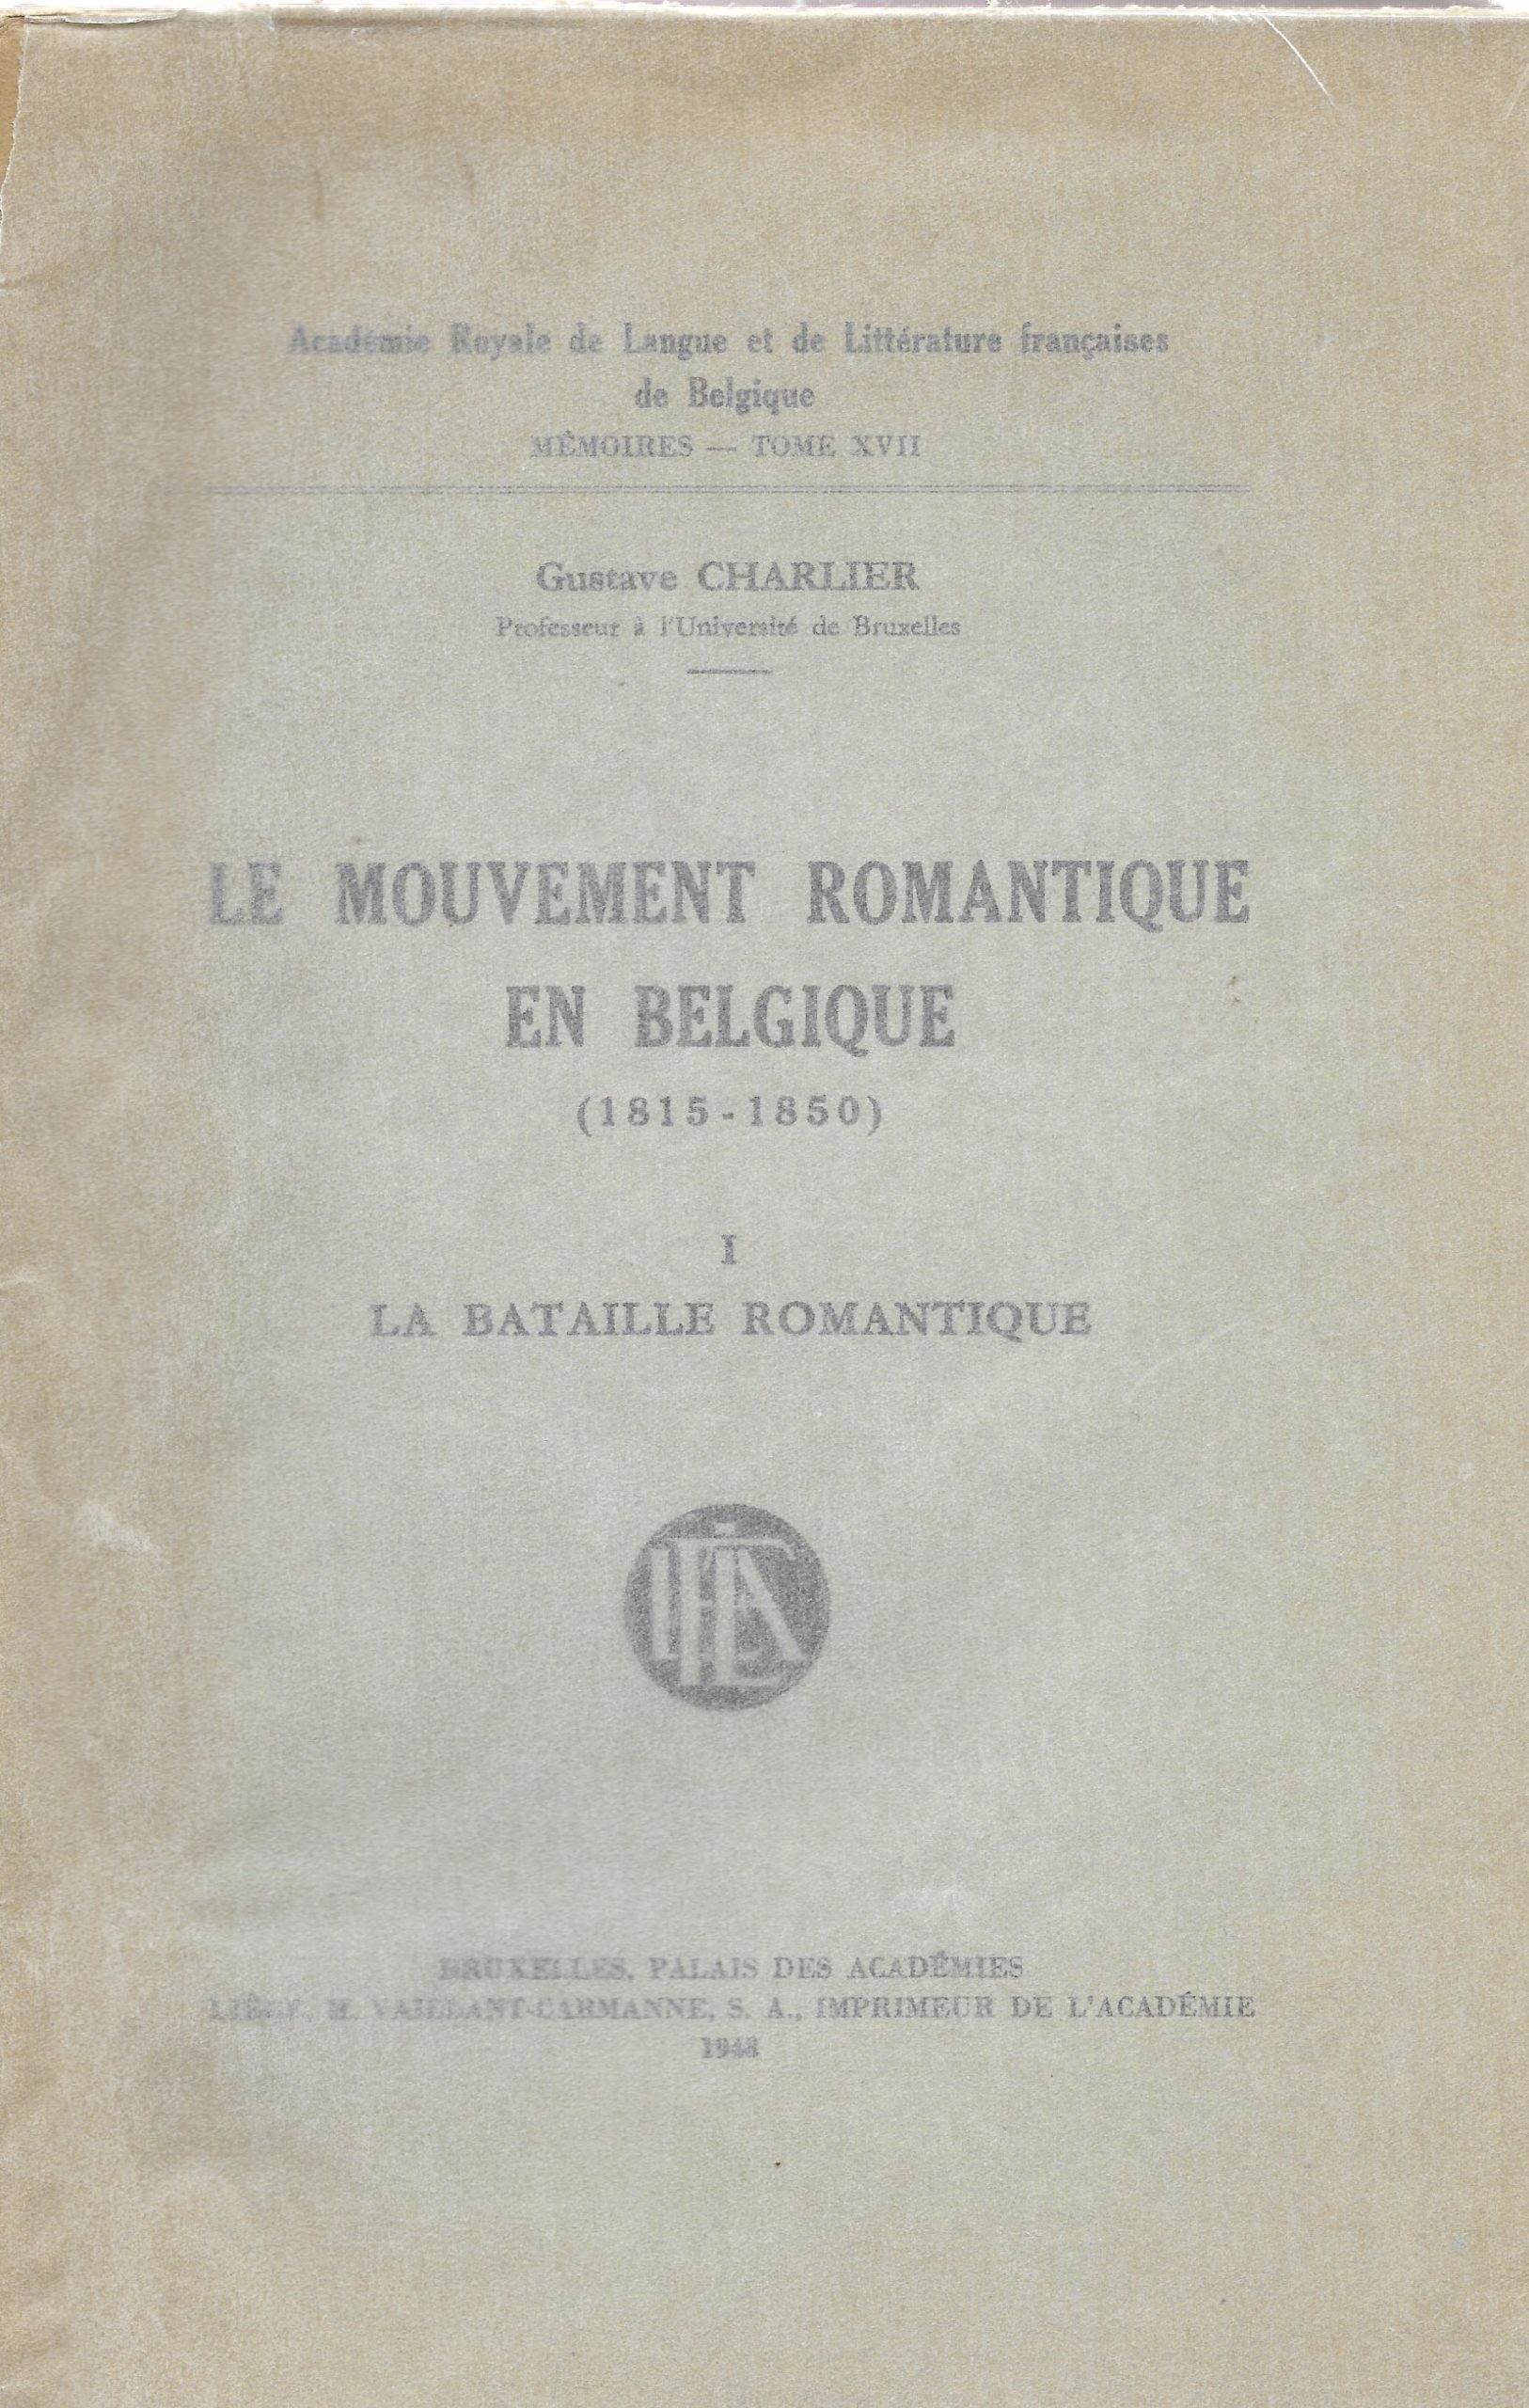 15. CHARLIER Gustave, « Le mouvement romantique en Belgique (1815-1850) », t. 1, « La bataille romantique », Bruxelles, 1948, 423 p., 8 €